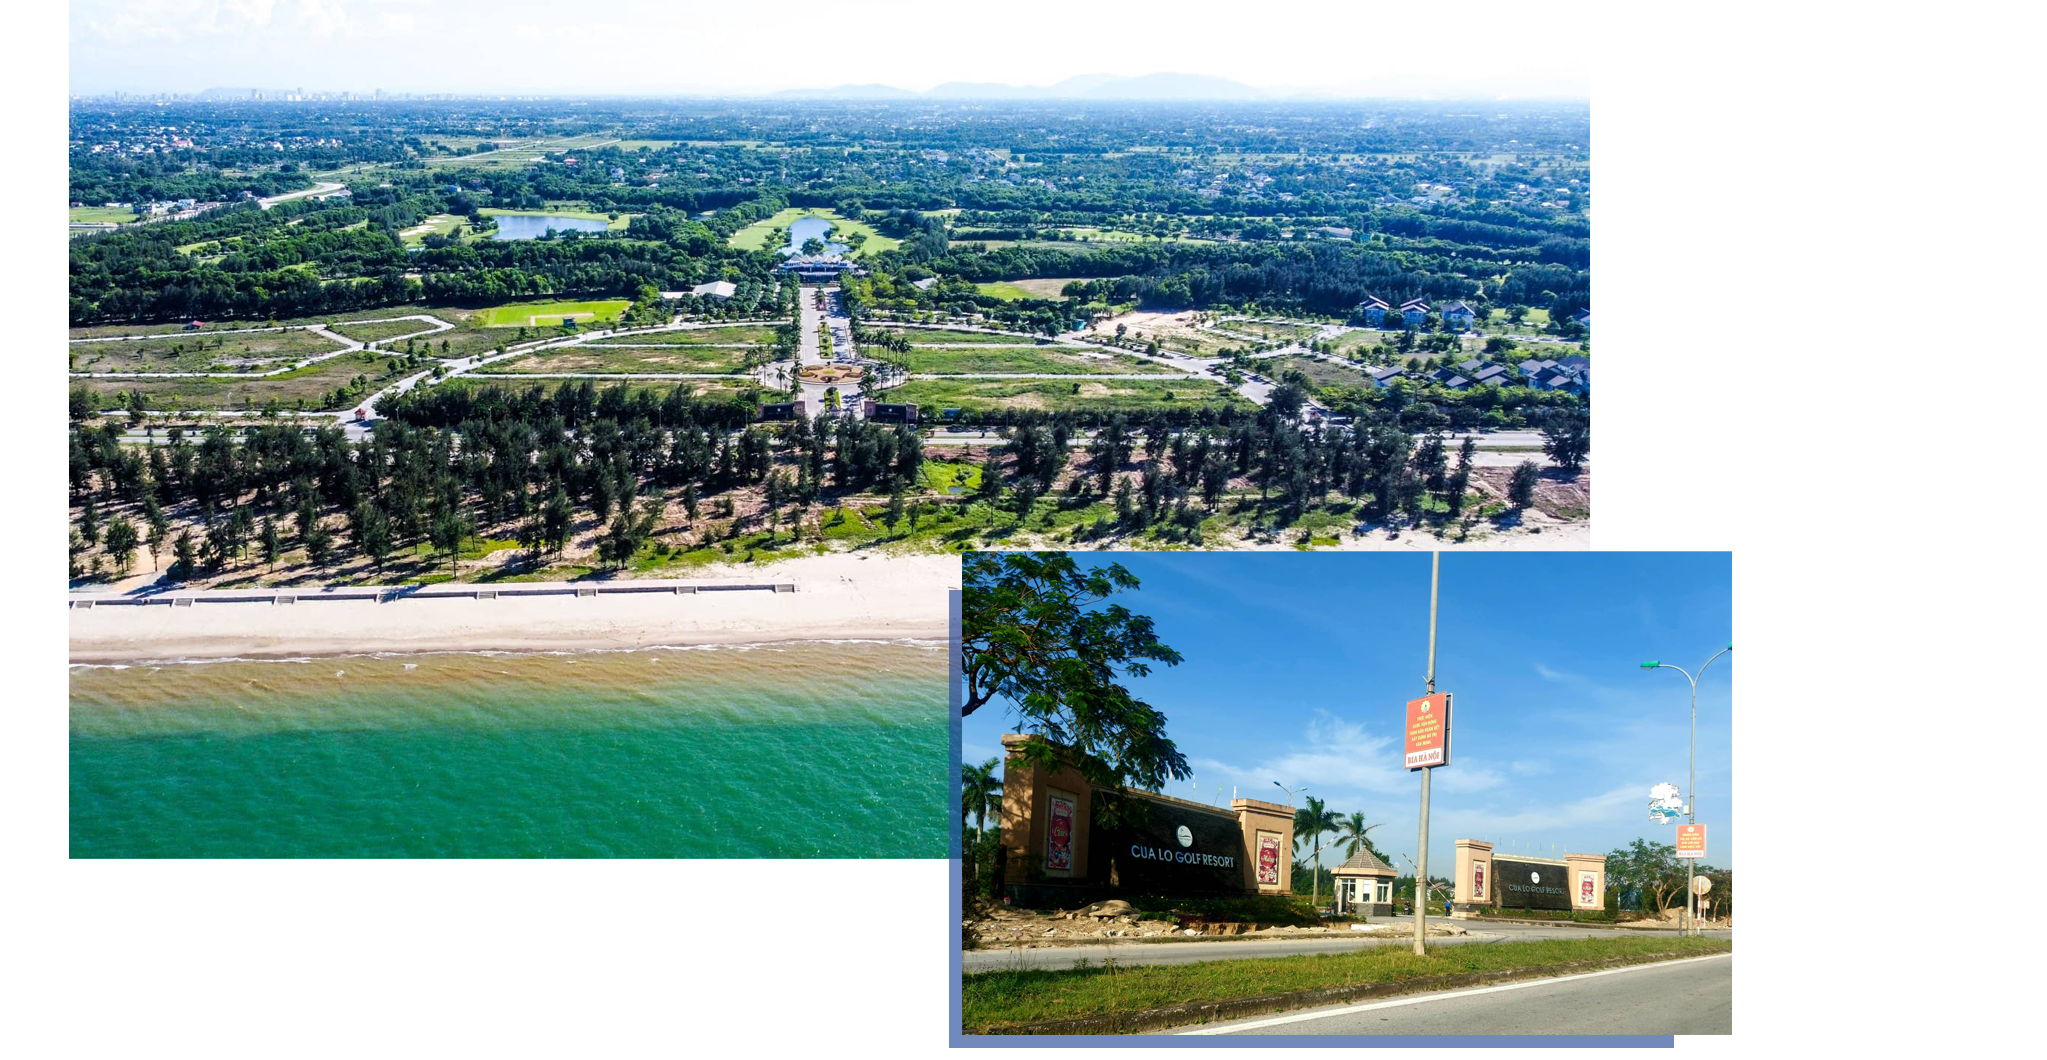 Tổ hợp sân Golf, Khách sạn, Biệt thự của Công ty cổ phần Golf biển Cửa Lò.